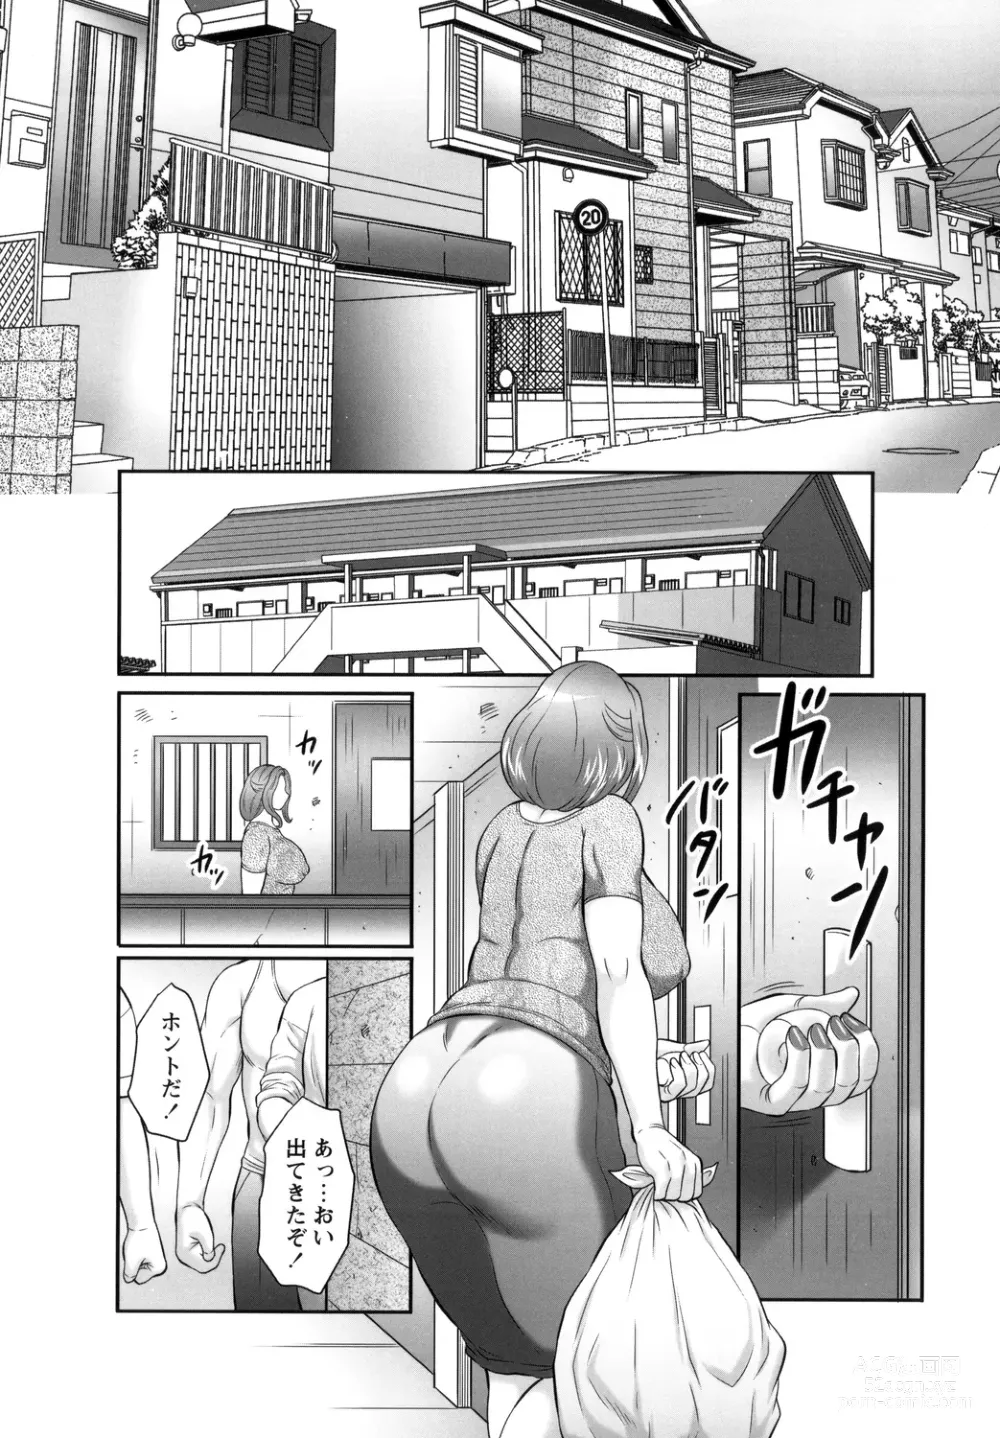 Page 8 of manga Midaragami Seinaru Jukujo ga Mesubuta Ika no Nanika ni Ochiru made